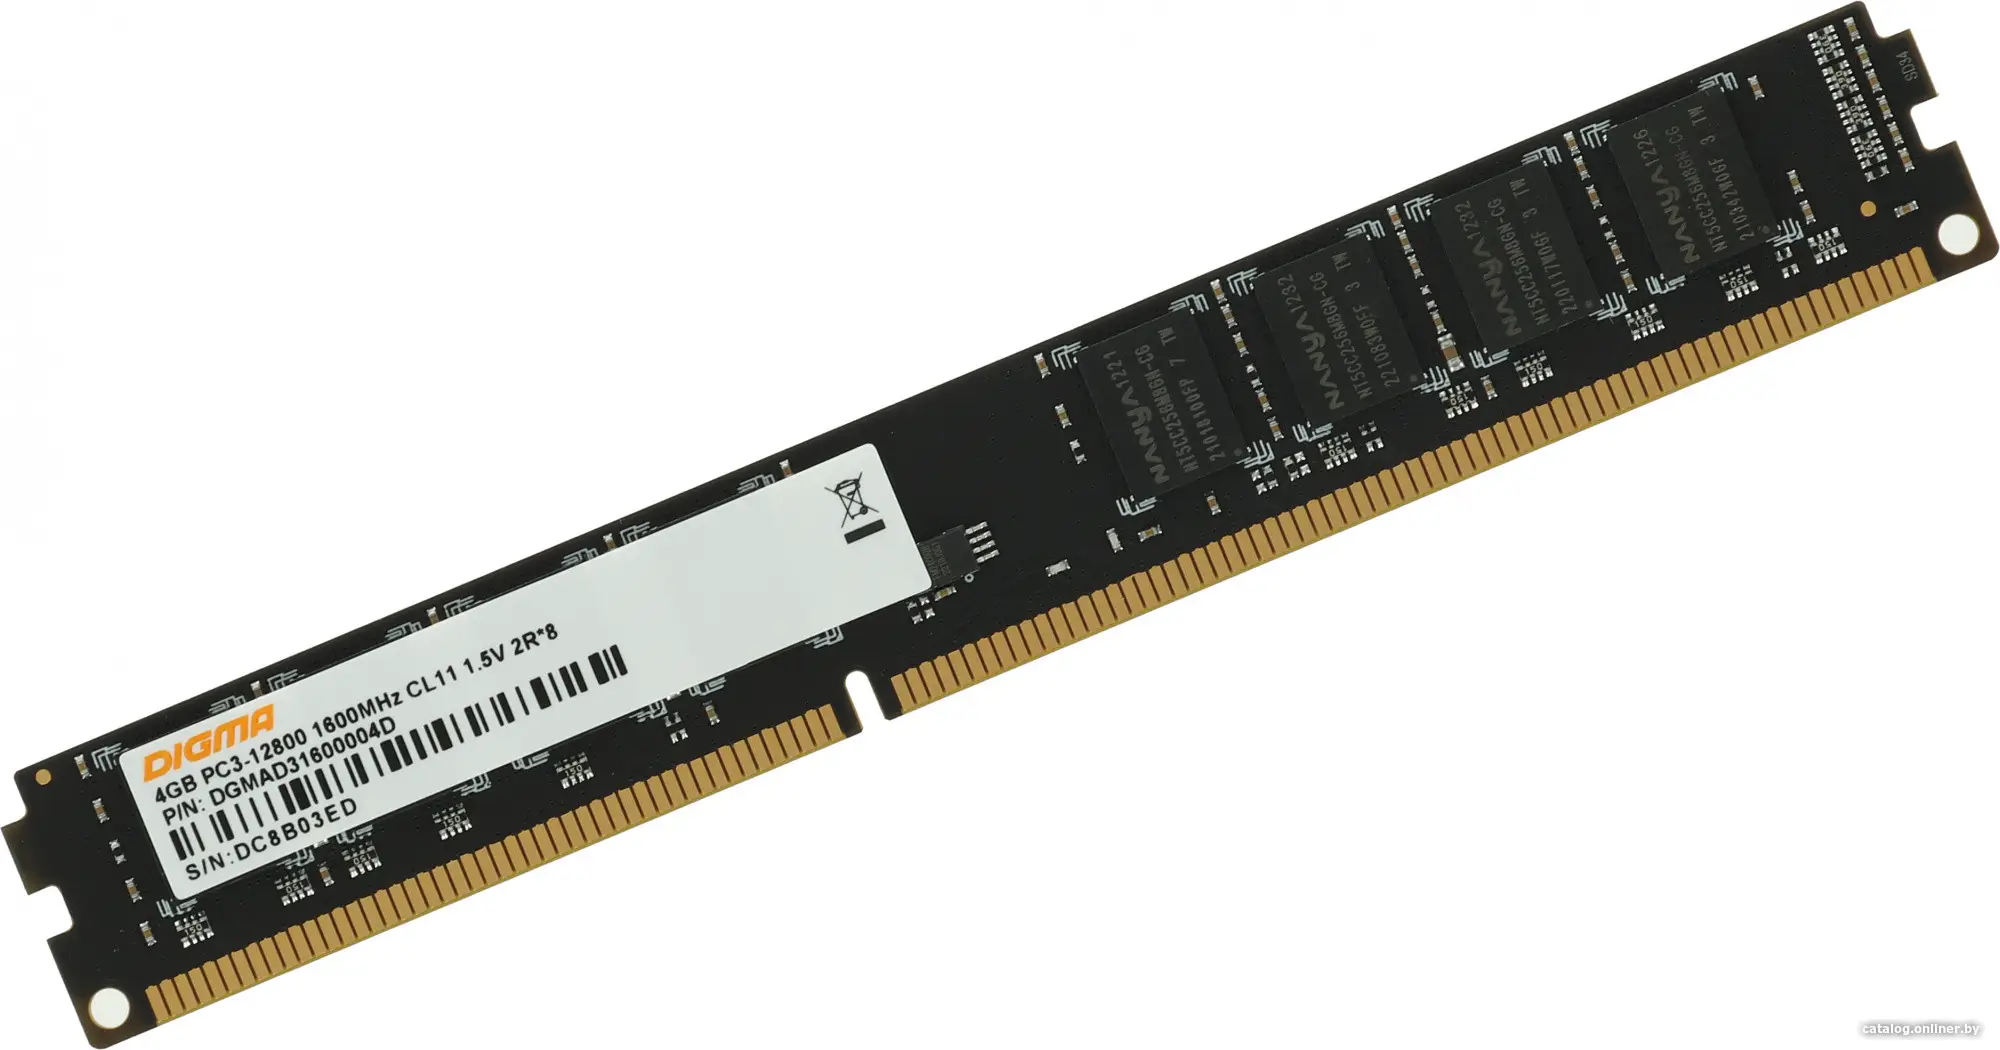 Купить Оперативная память Digma DDR3 4Gb RTL (DGMAD31600004D), цена, опт и розница